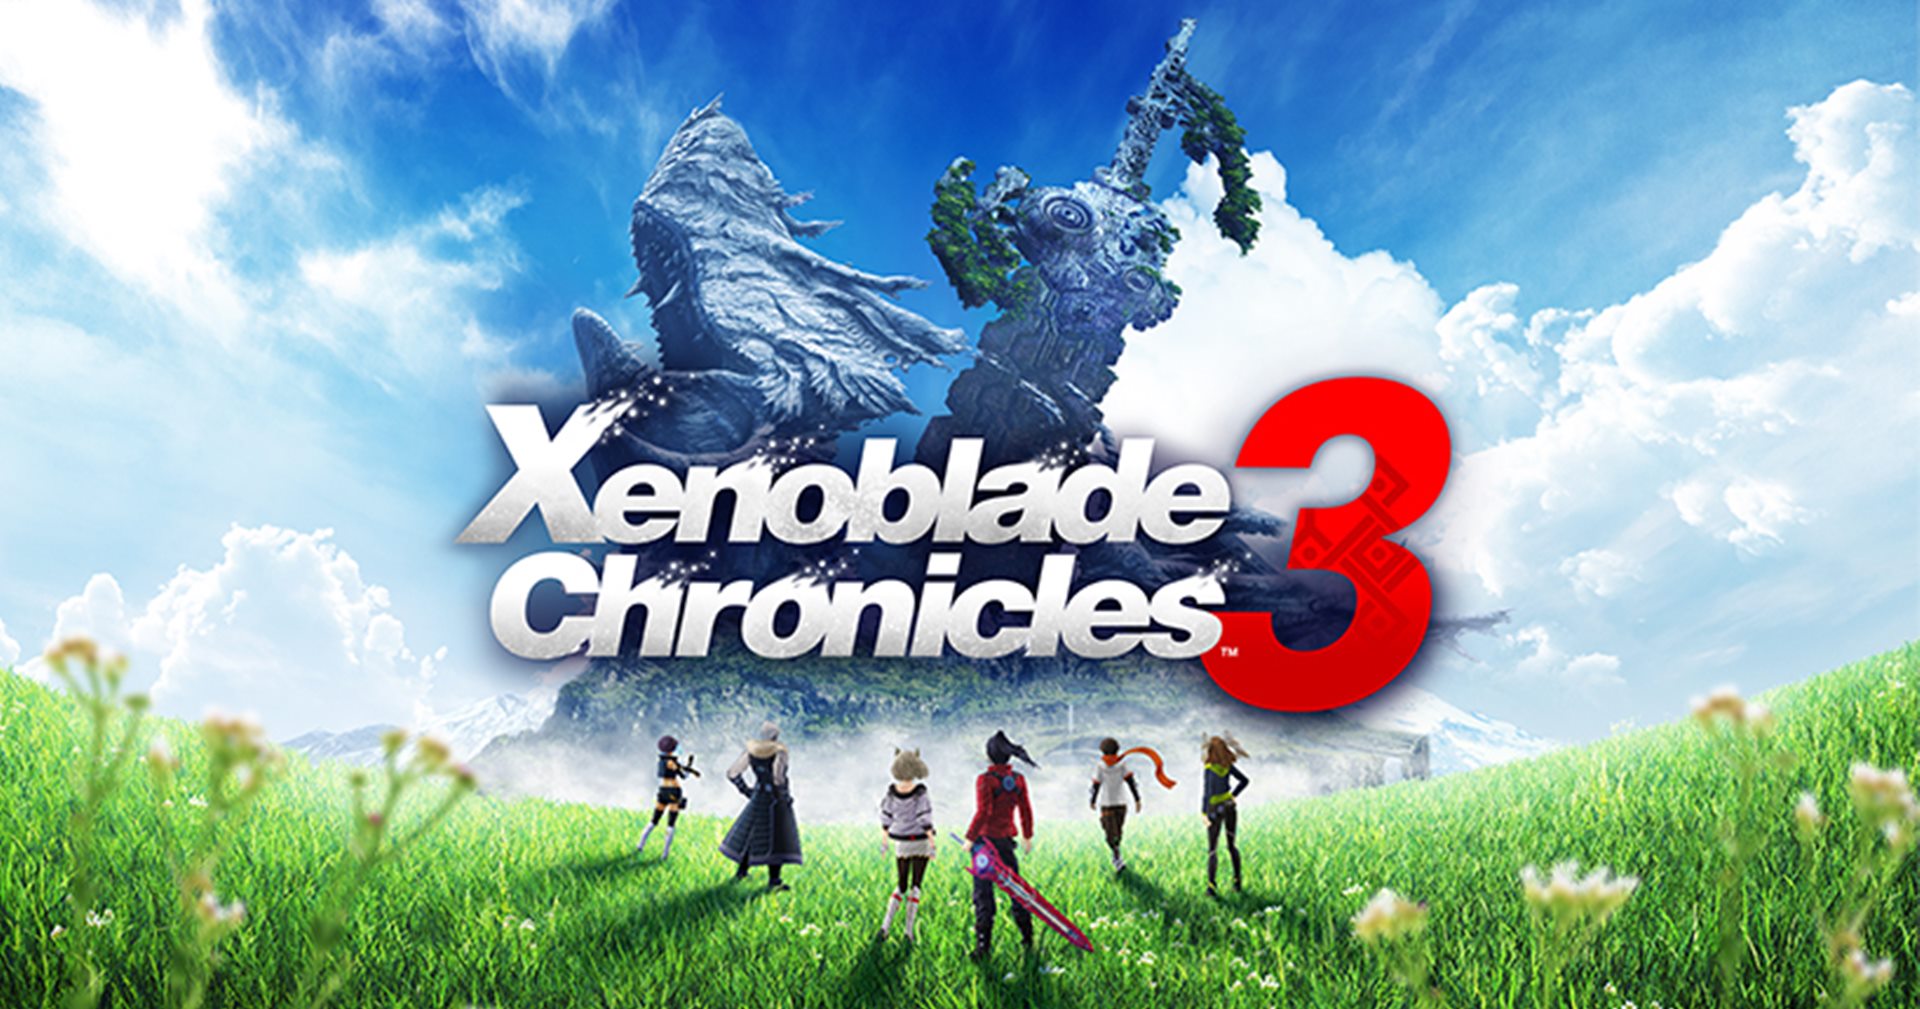 ชมตัวอย่างใหม่เกม Xenoblade Chronicles 3 เปิดเรื่องราวสุดเข้มข้น